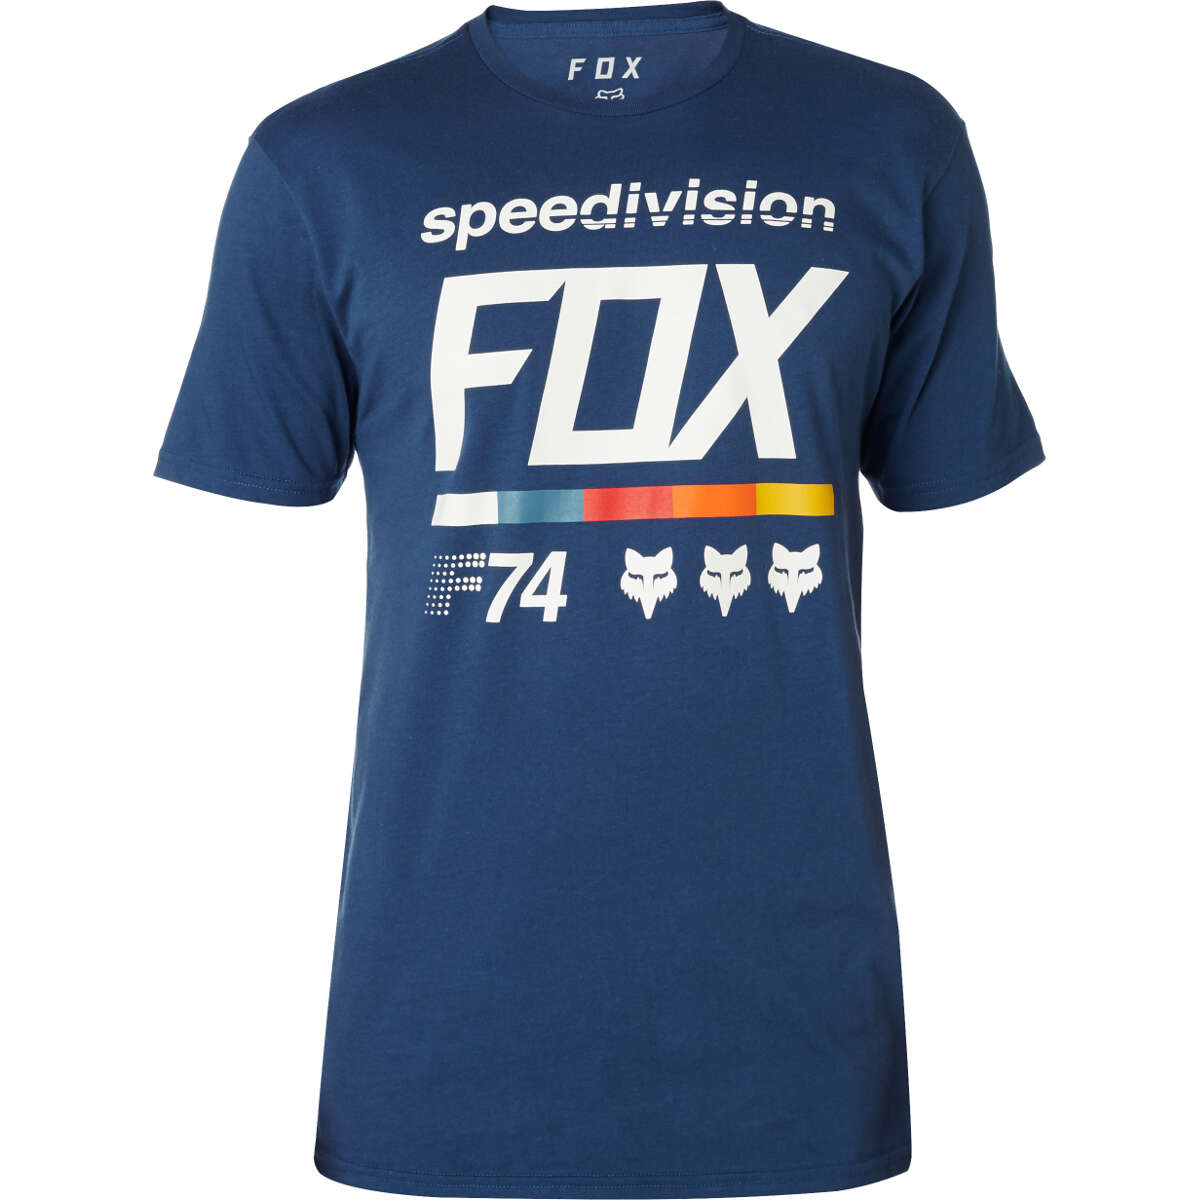 Fox T-Shirt Draftr 2 Light Indigo